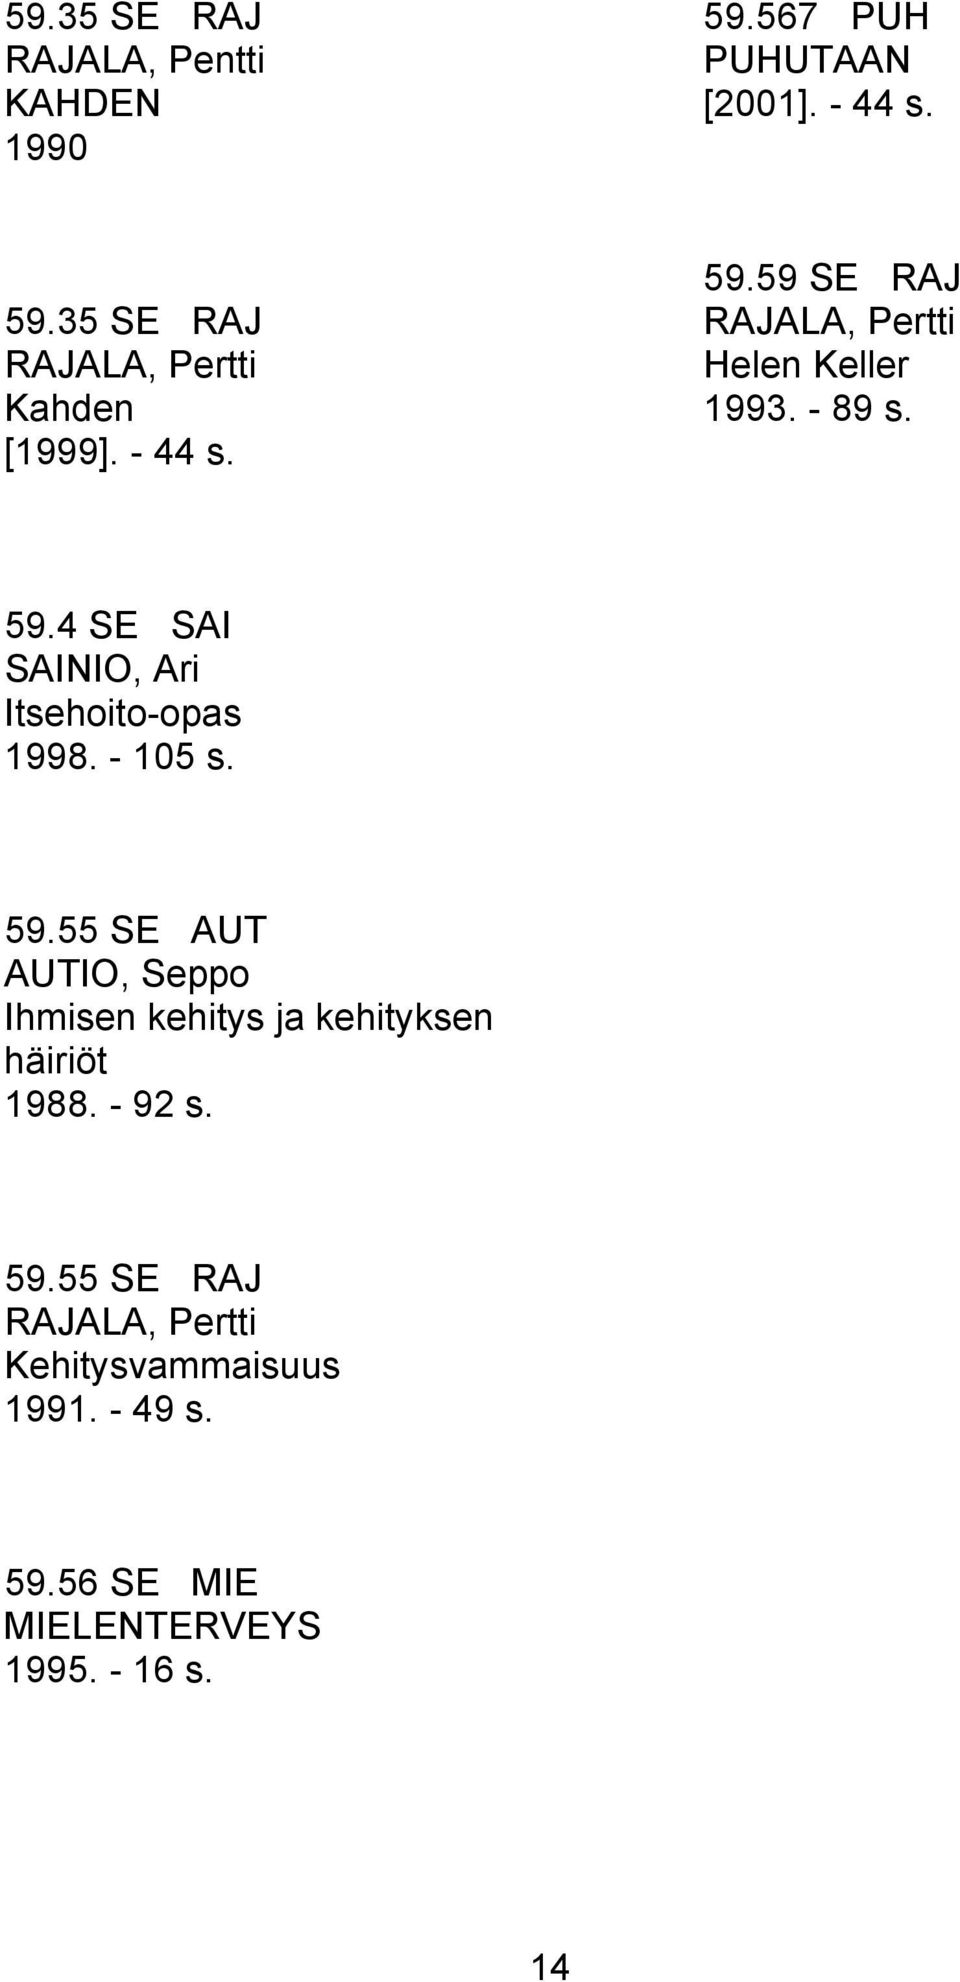 59.55 SE AUT AUTIO, Seppo Ihmisen kehitys ja kehityksen häiriöt 1988. - 92 s. 59.